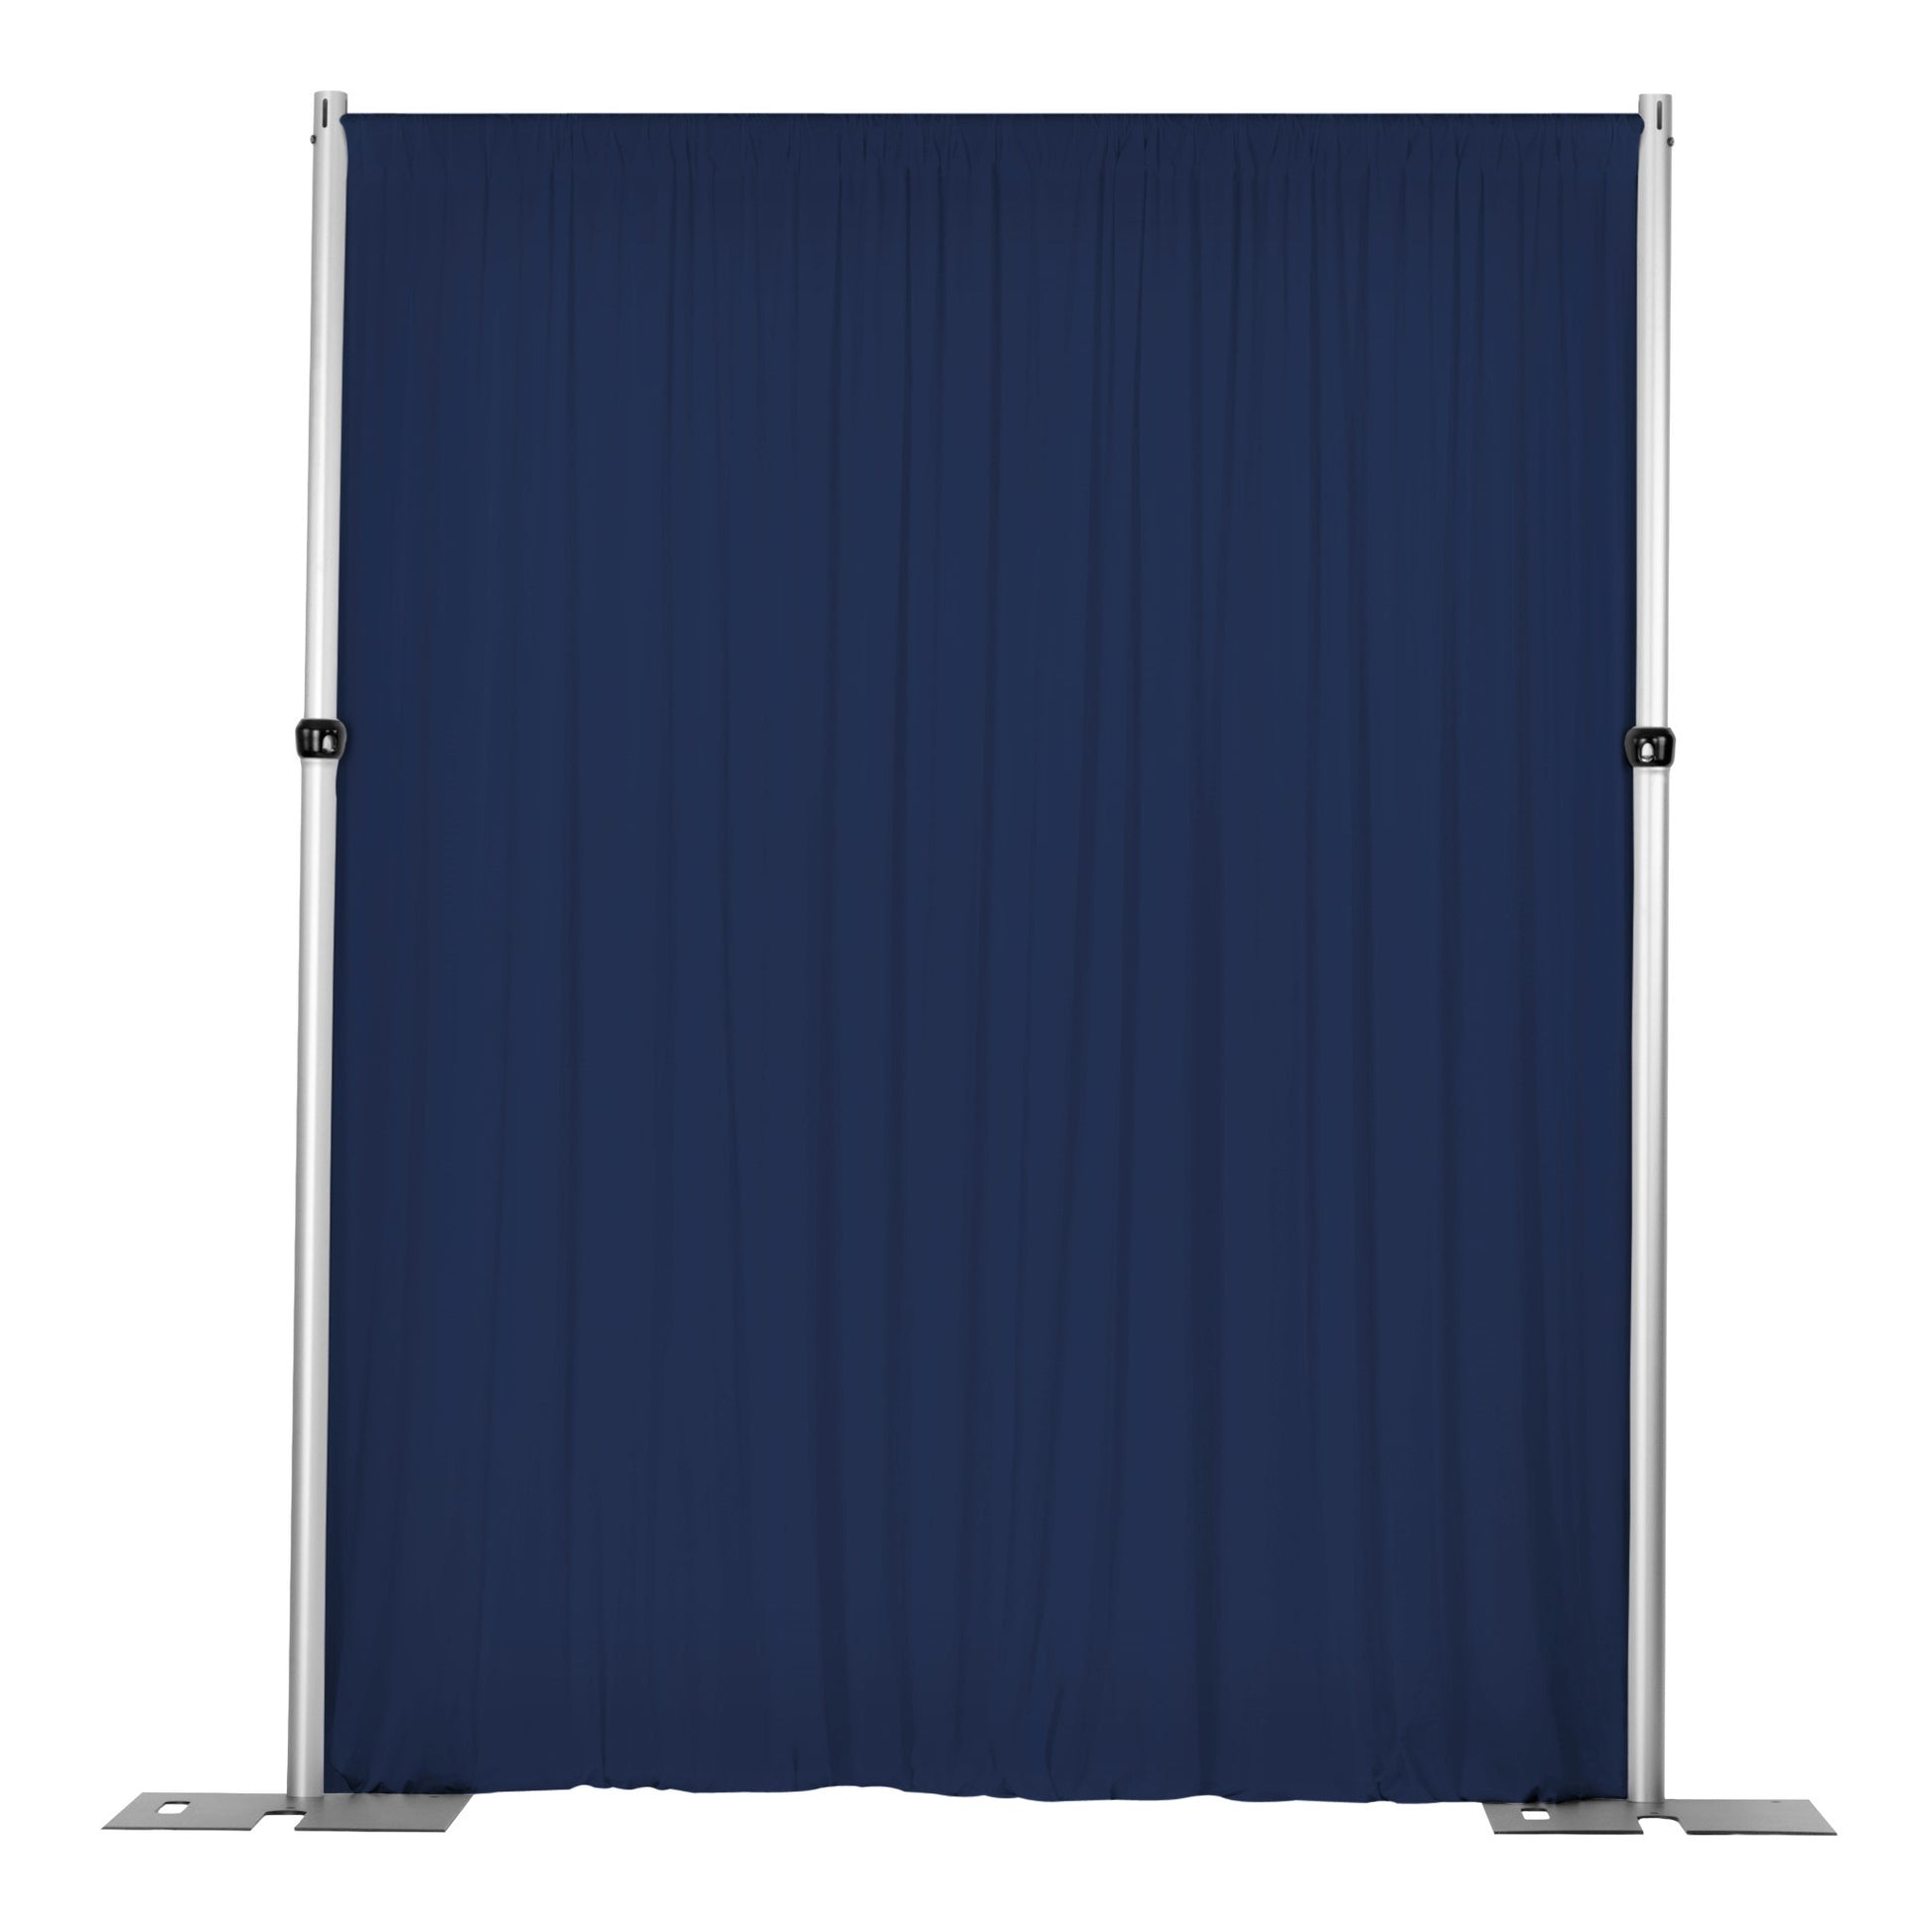 Spandex 4-way Stretch Drape Curtain 8ft H x 60" W - Navy Blue